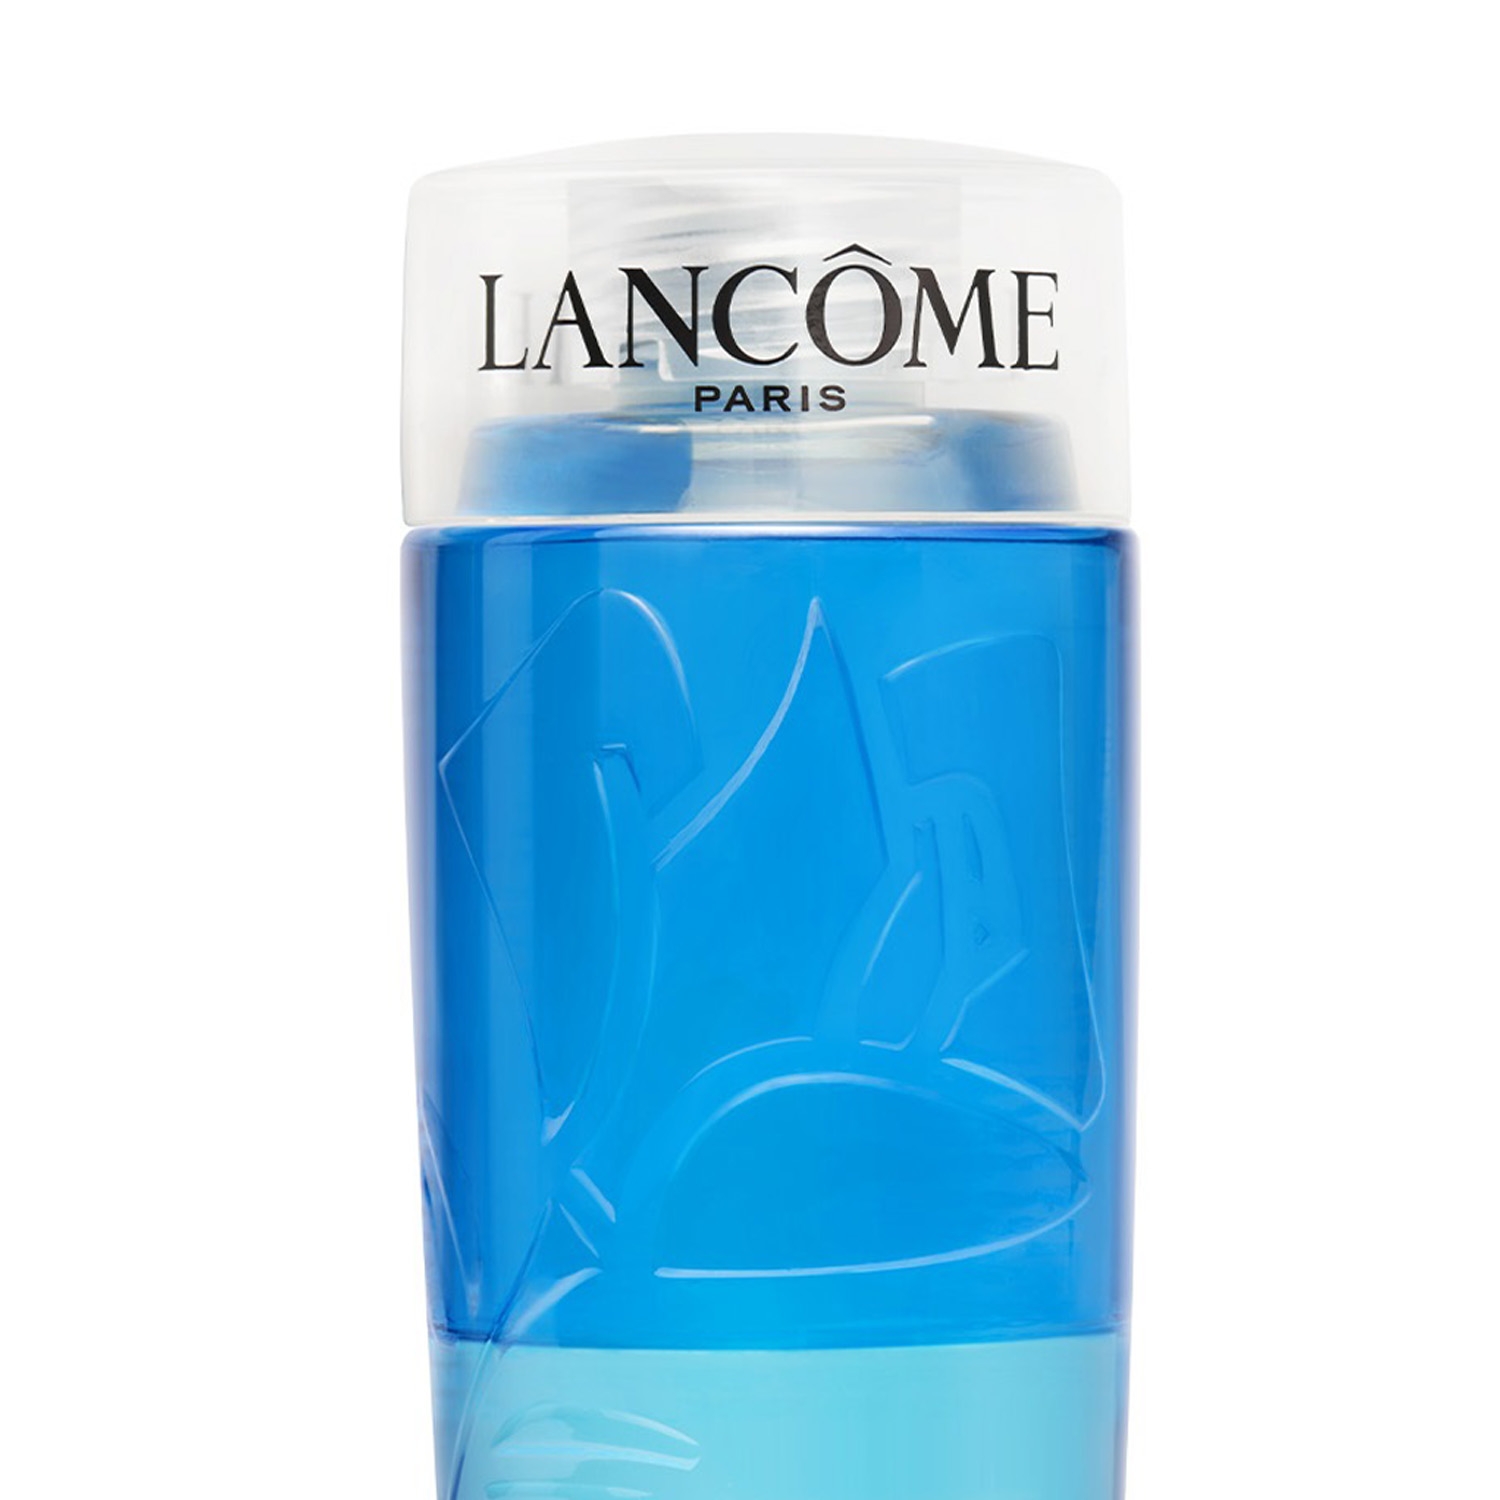 Lancome Bi-Facial Eye Makeup Remover - Clear (125ml)